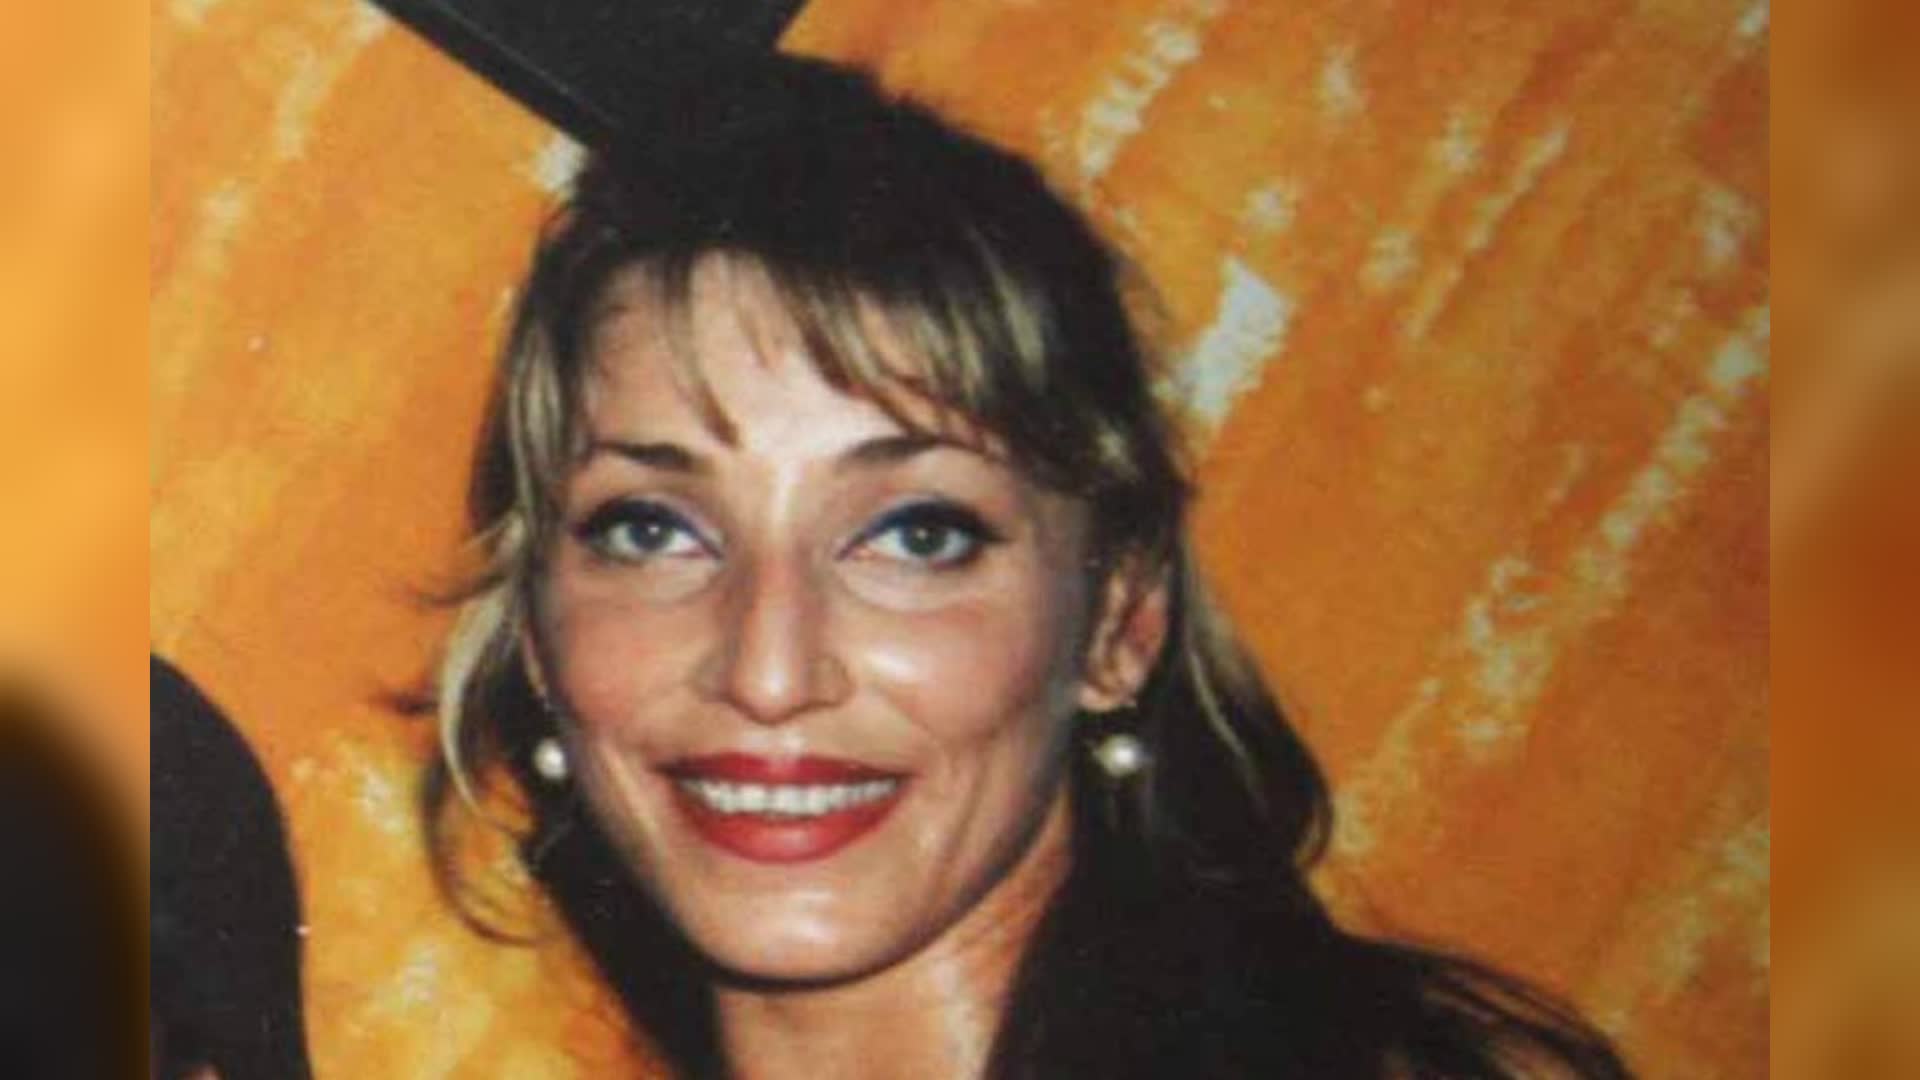 Femminicidi, Bruna Biggi: "Mia sorella Luciana ammazzata da chi ha ucciso ancora"